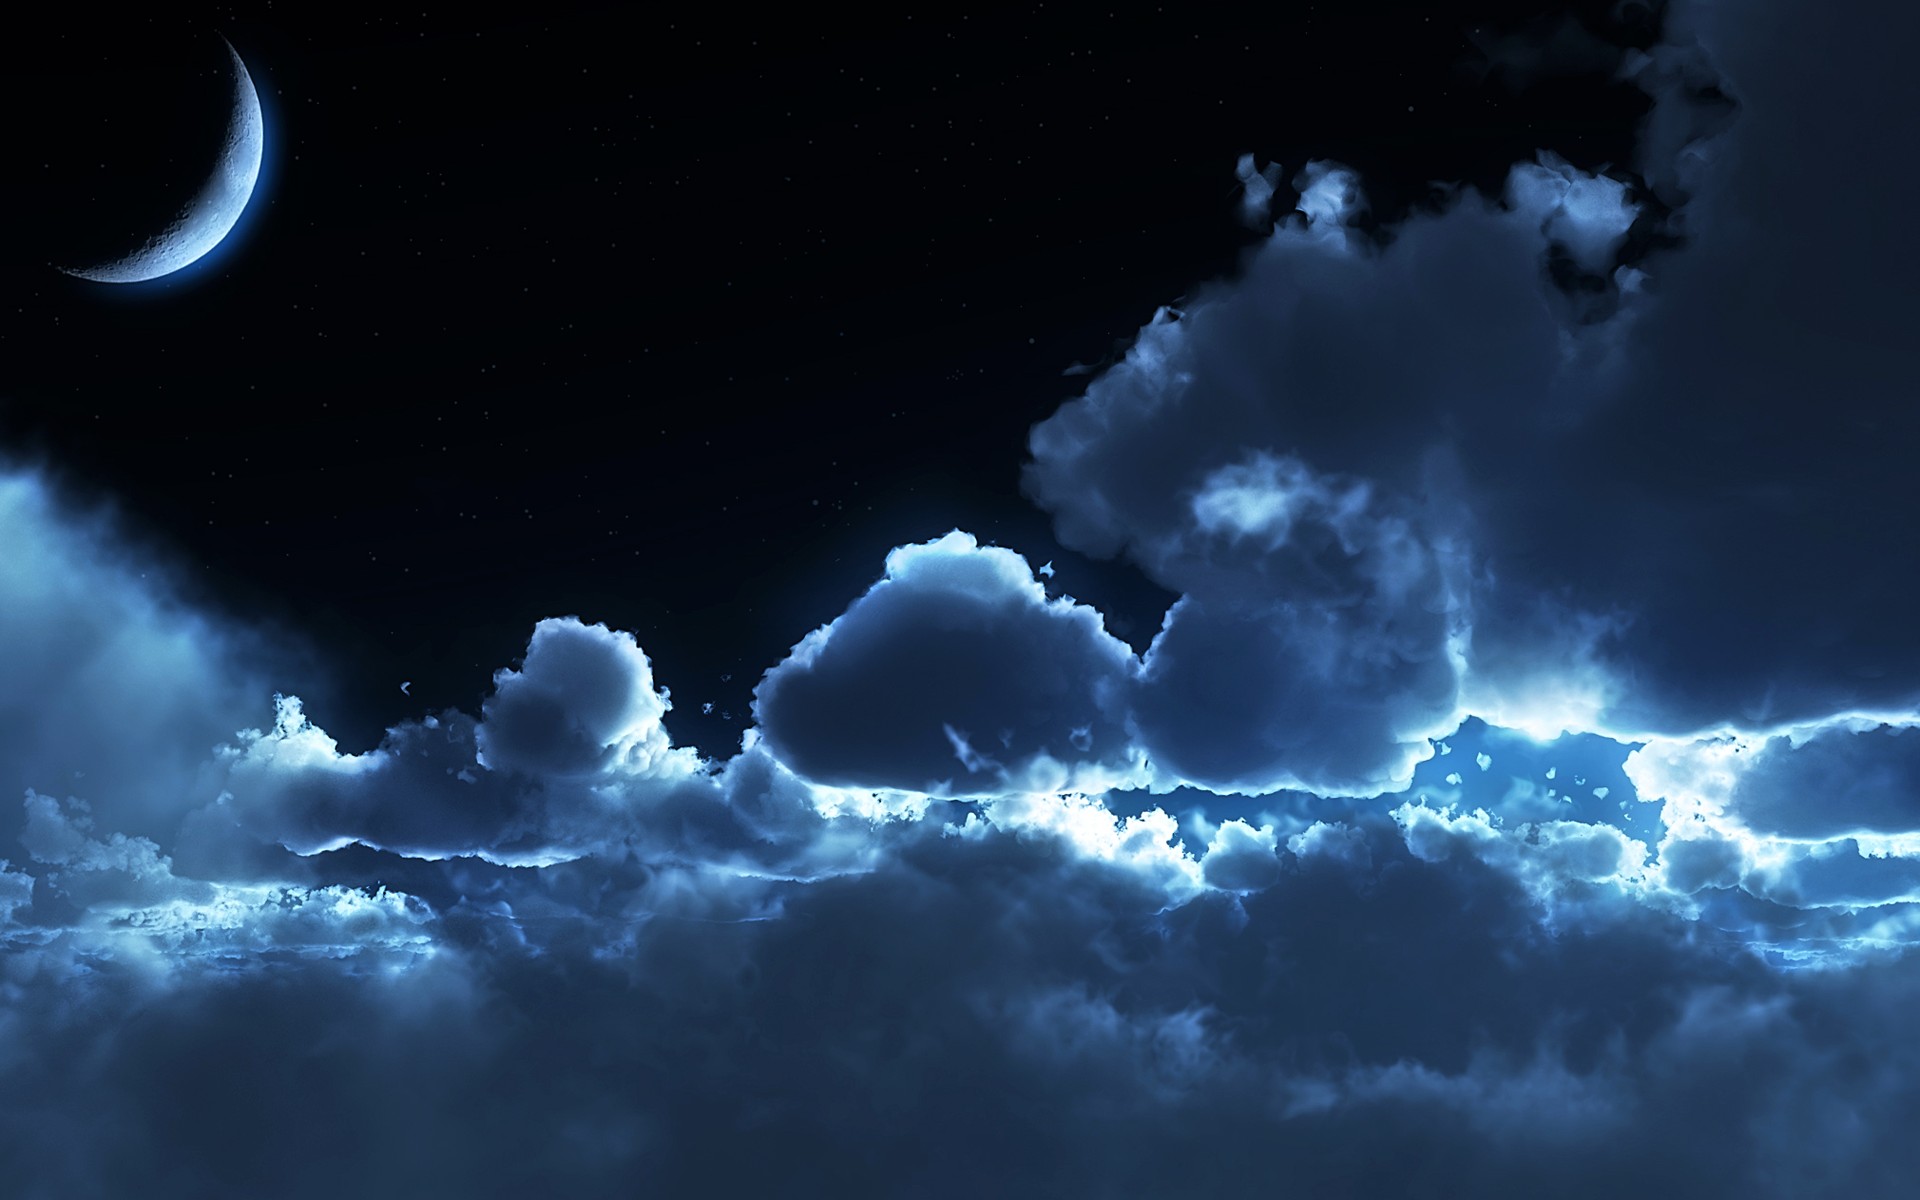 Скачать обои бесплатно Небо, Ночь, Облака, Луна, Земля/природа картинка на рабочий стол ПК